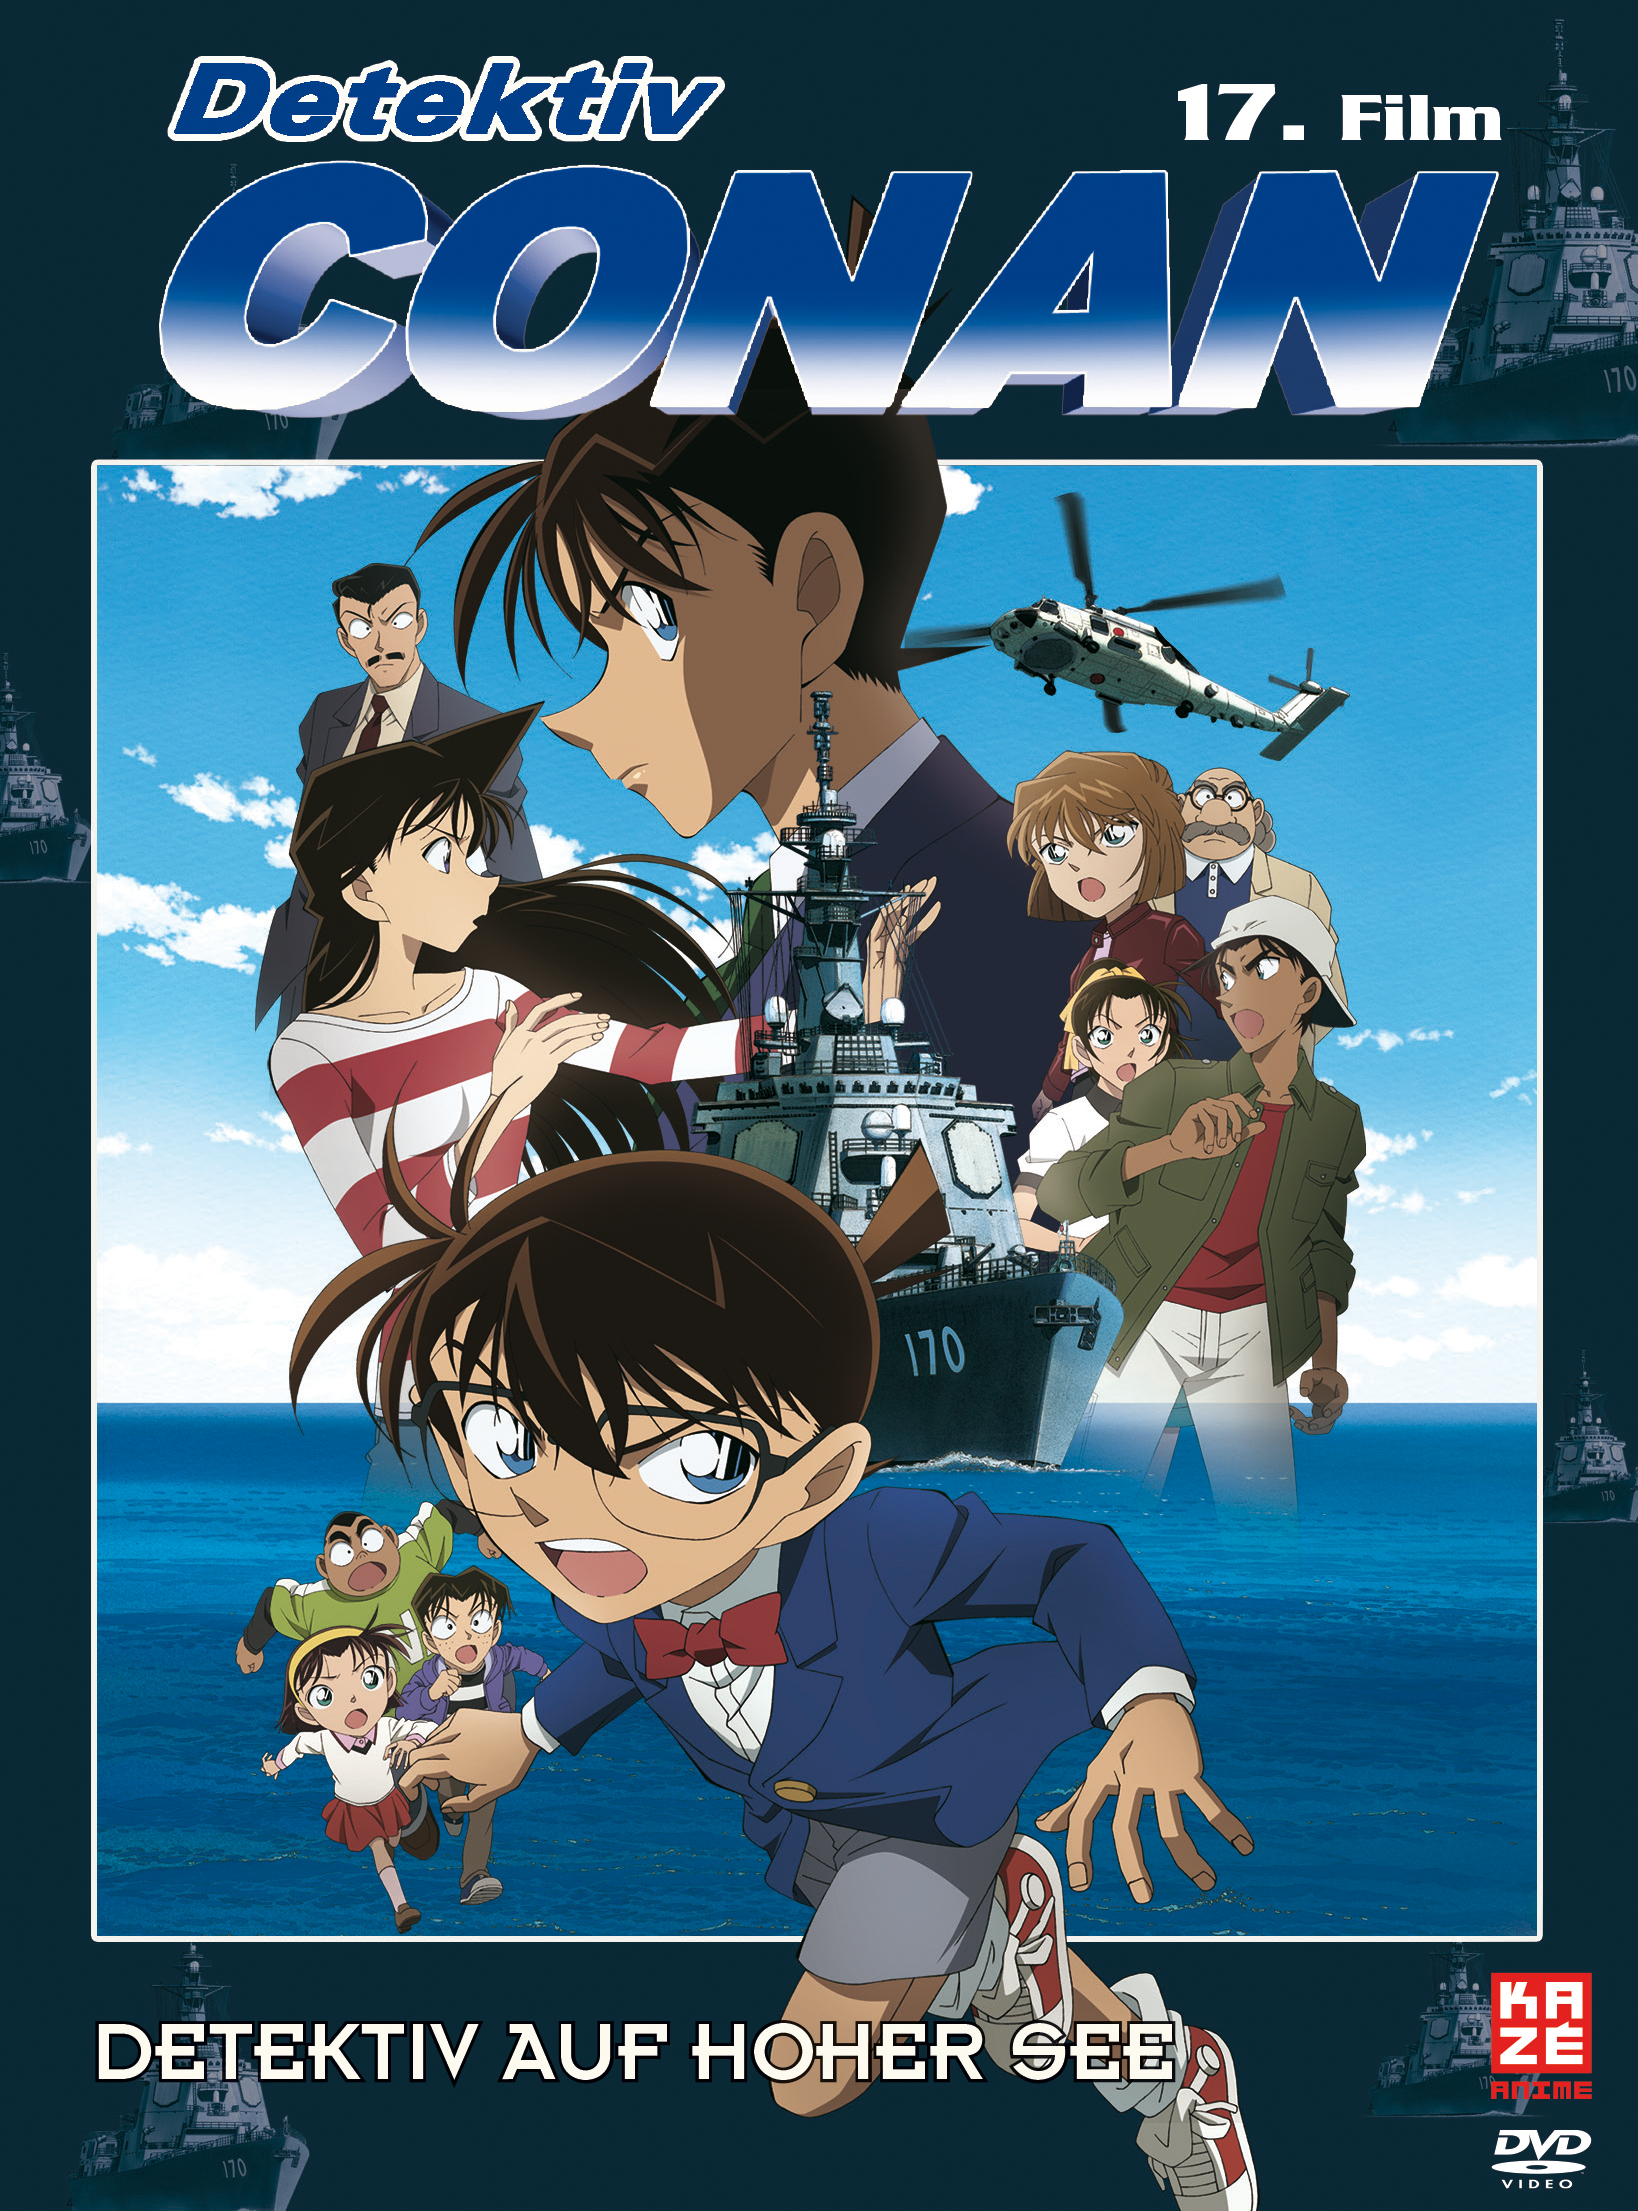 Detektiv Conan 17. Film Detektiv auf hoher See DVD